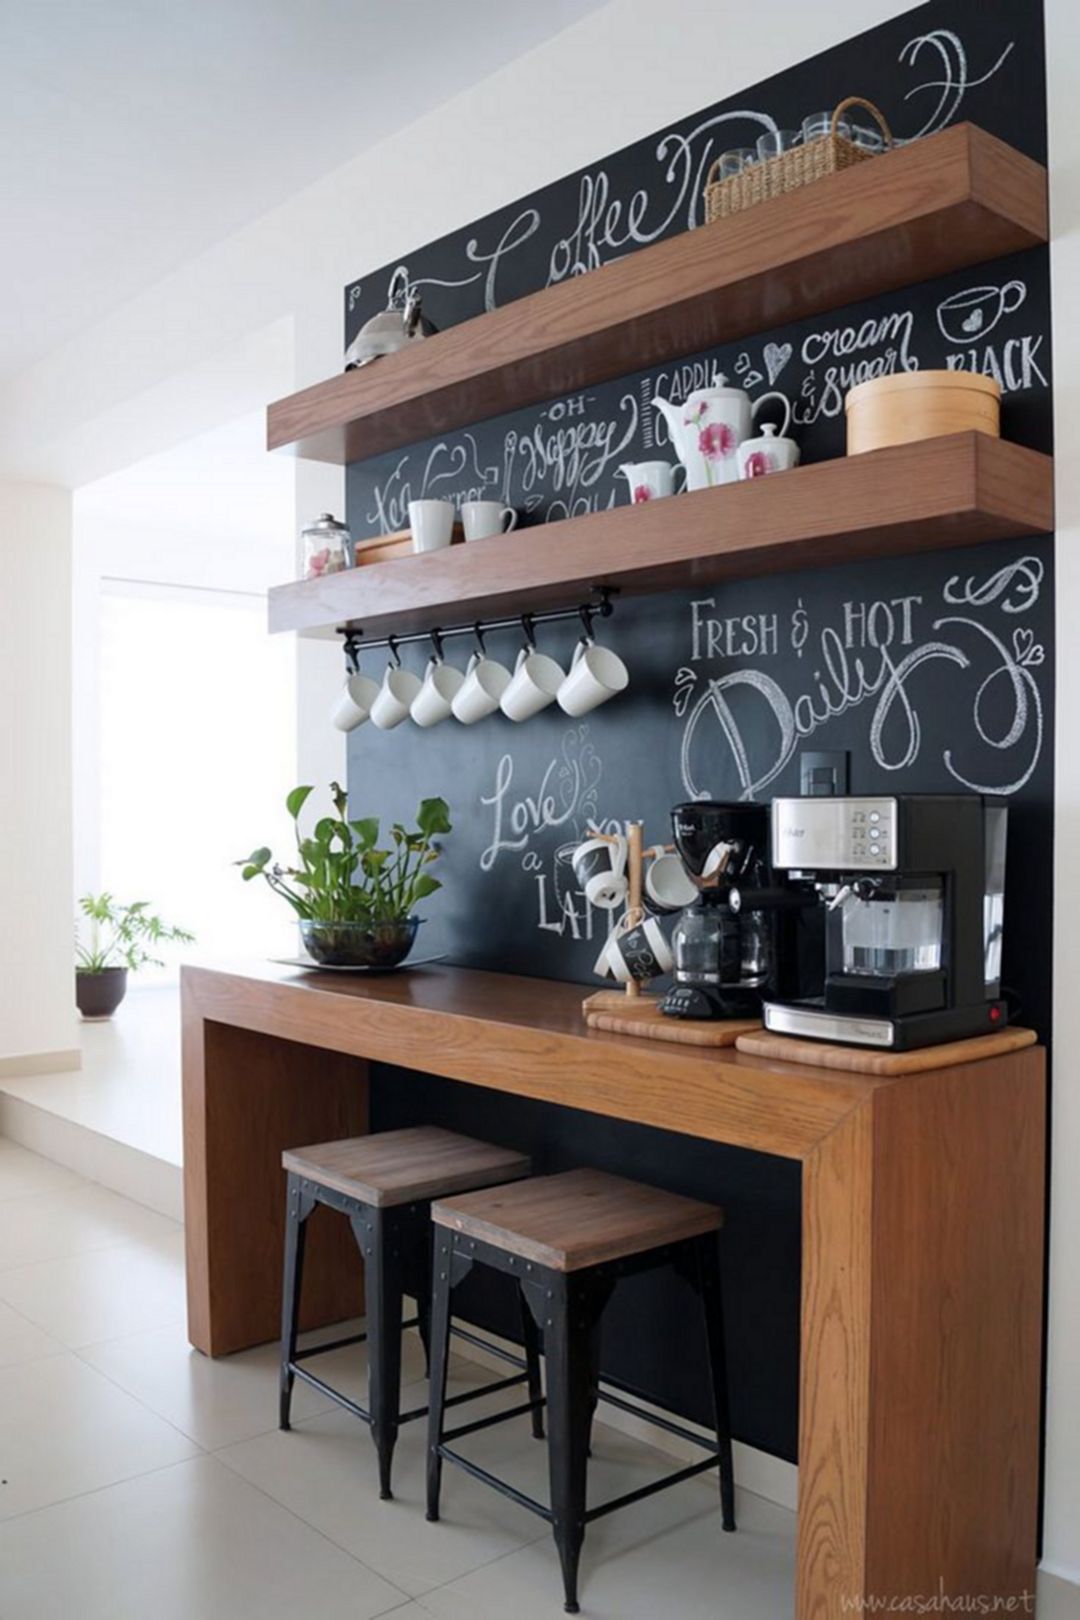 Elegant Home Coffee Bar Design And Decor Ideas 14400